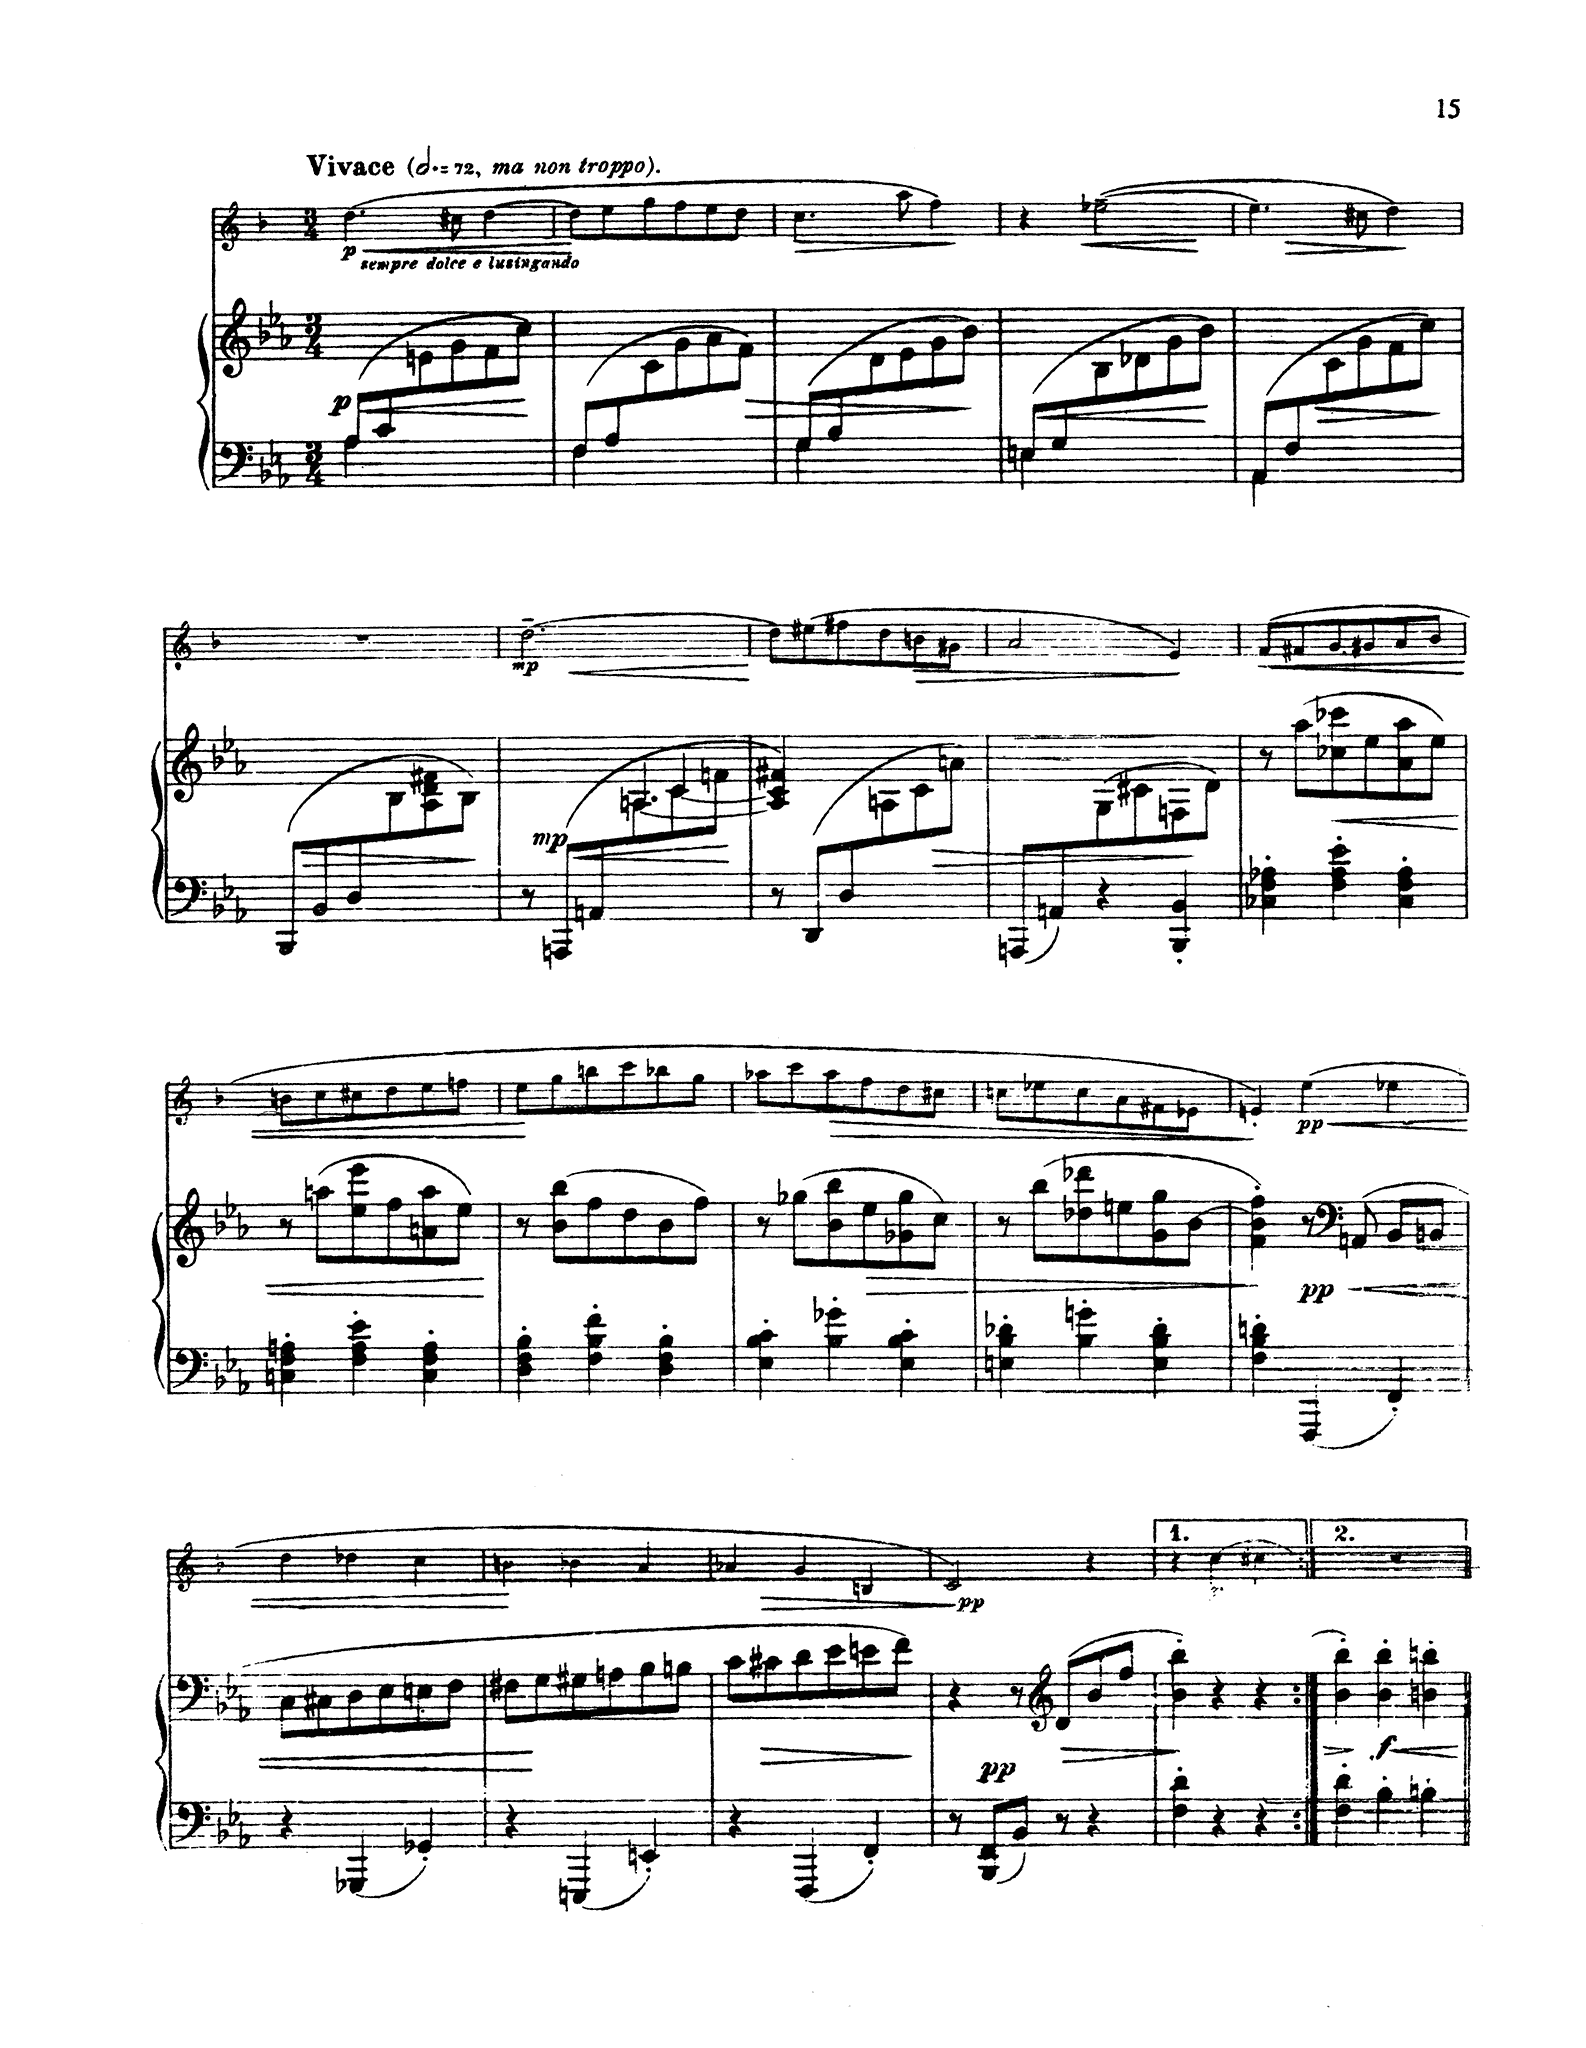 Reger Sonata in A-flat Major, Op. 49 No. 1 - Movement 2